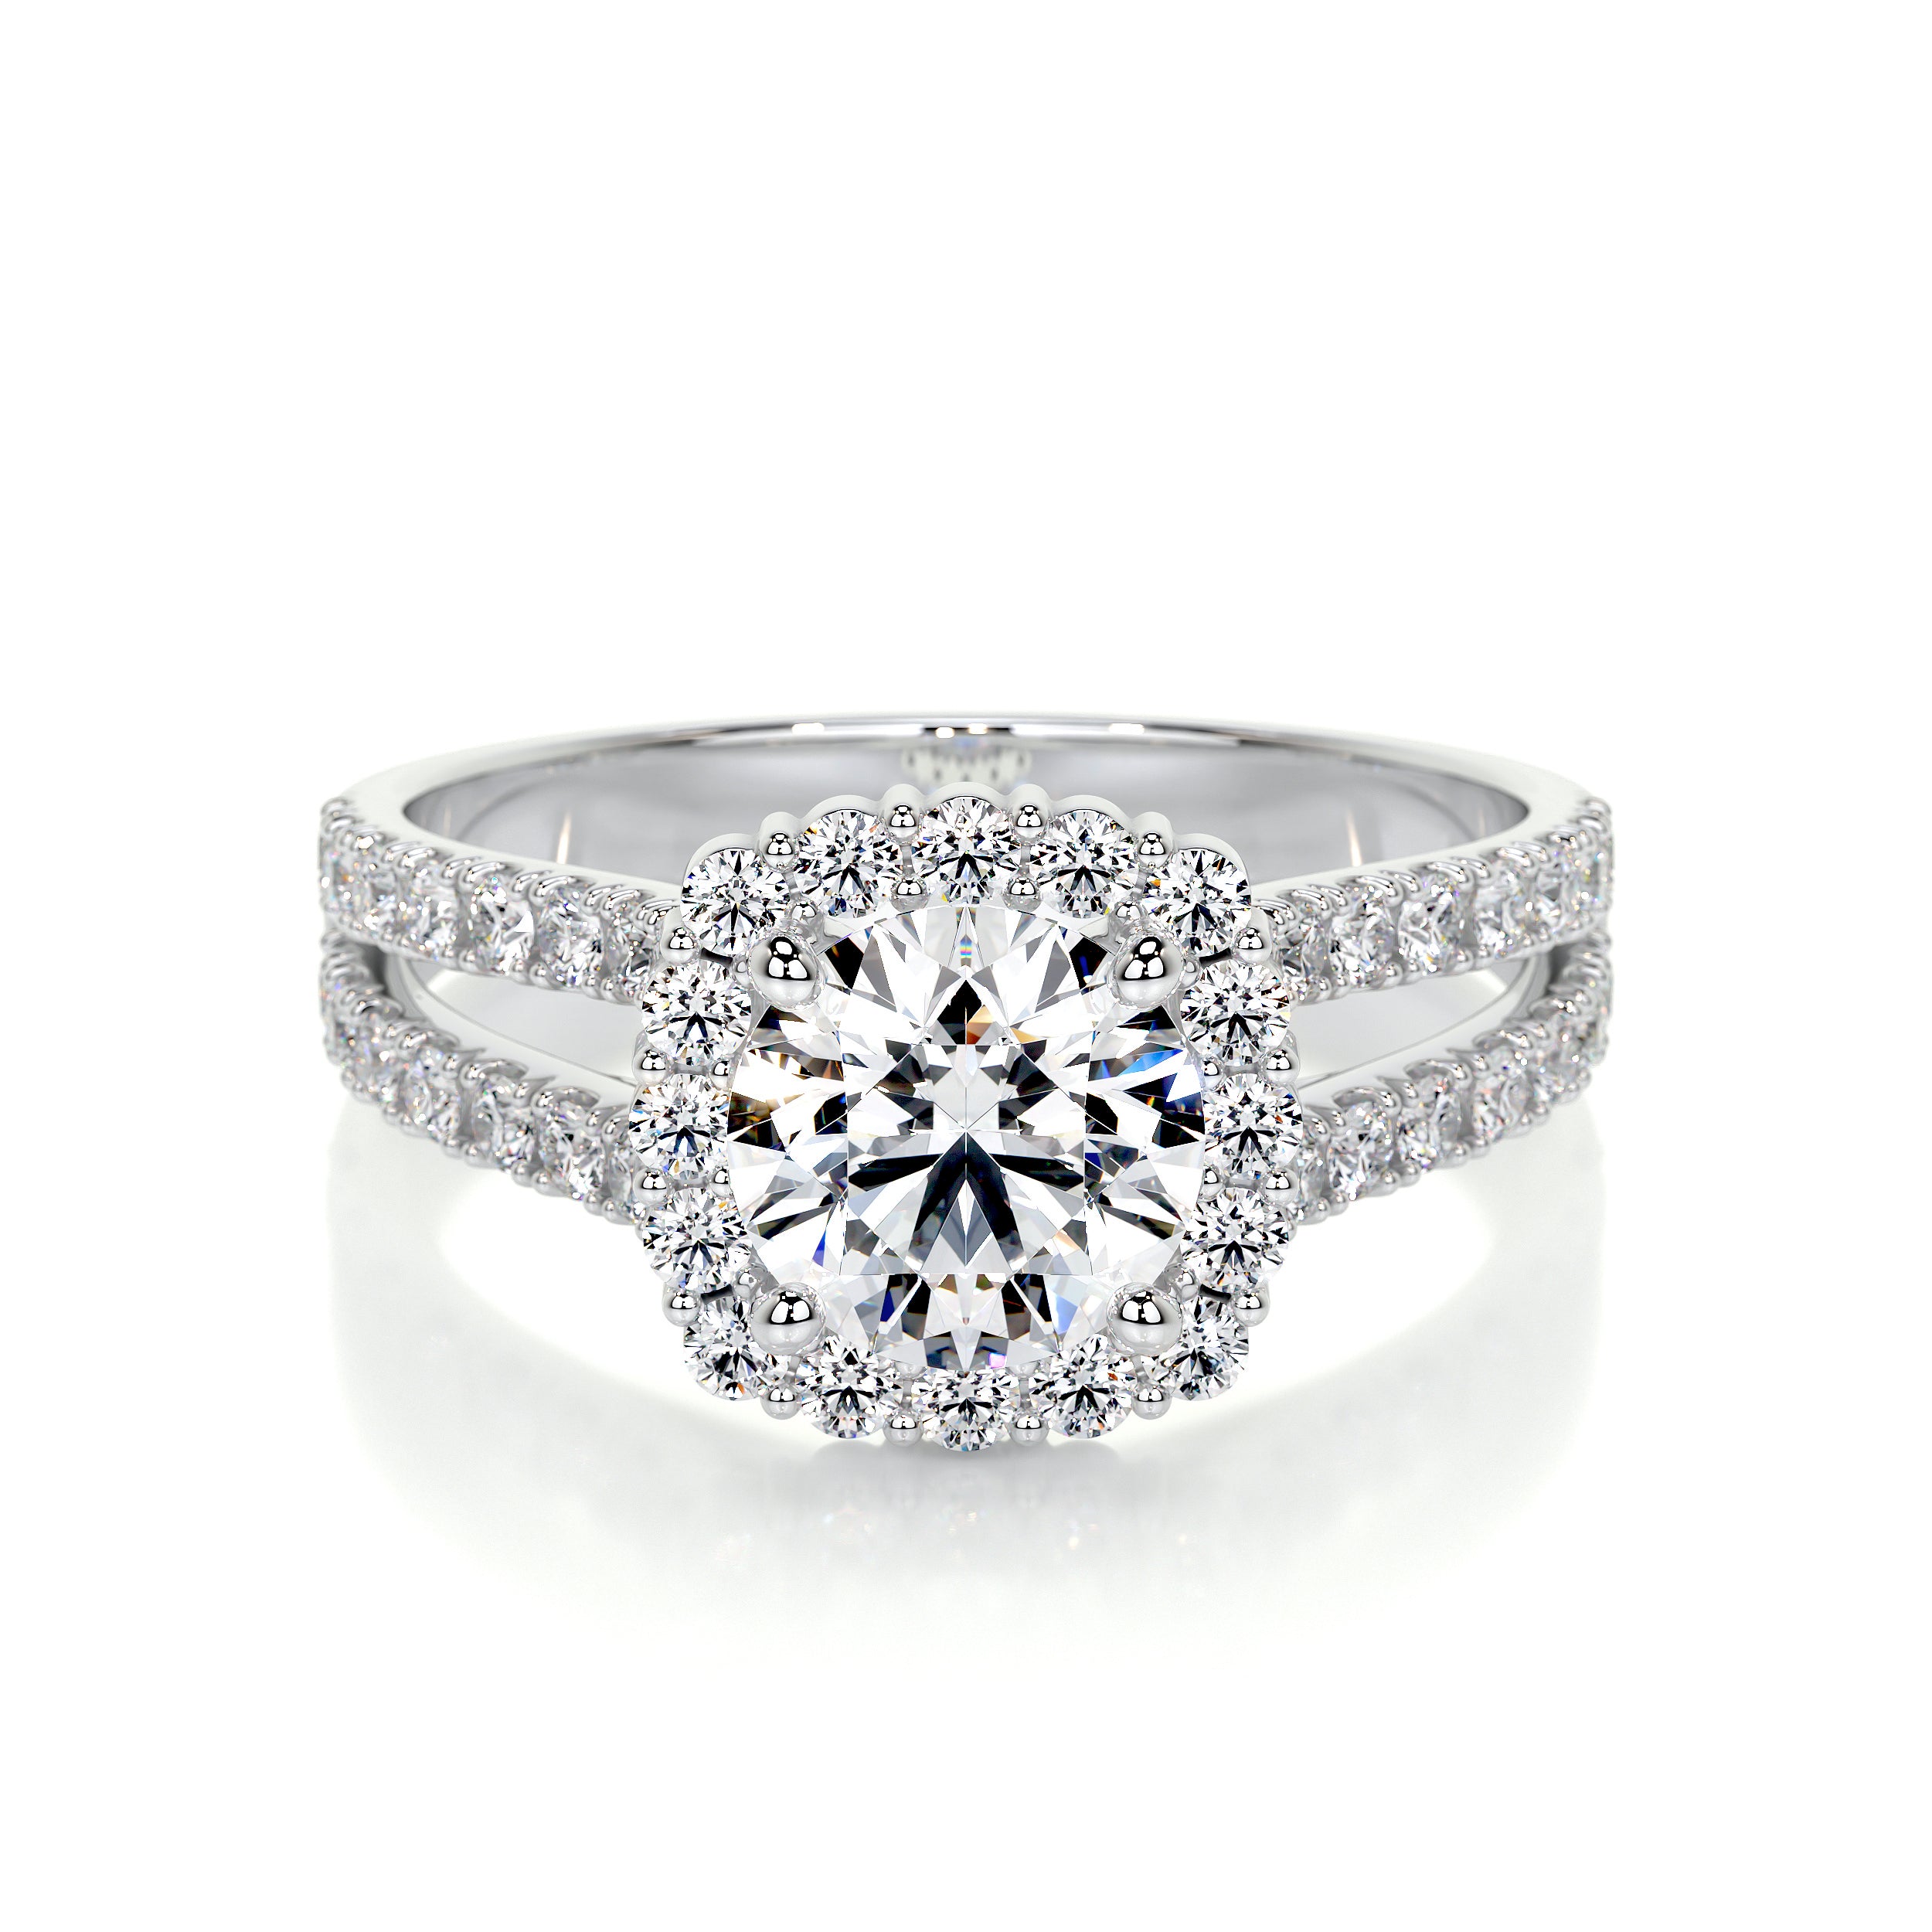 Hilary Lab Grown Diamond Ring   (3 Carat) -14K White Gold